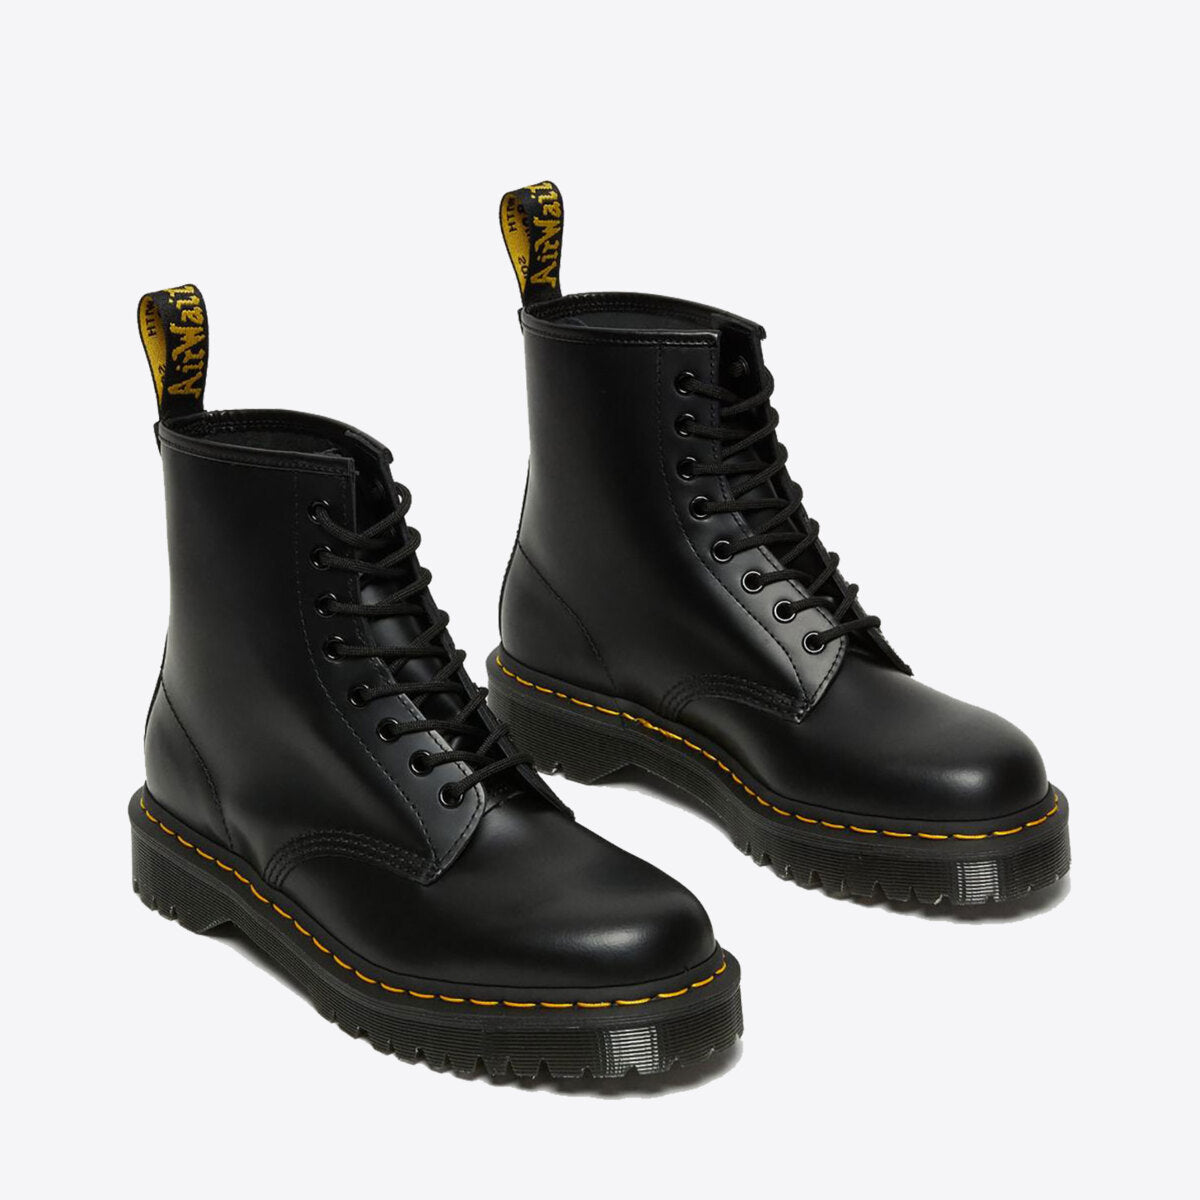 DR MARTENS 1460 Bex Platform Boot Black Smooth Leather - Image 0